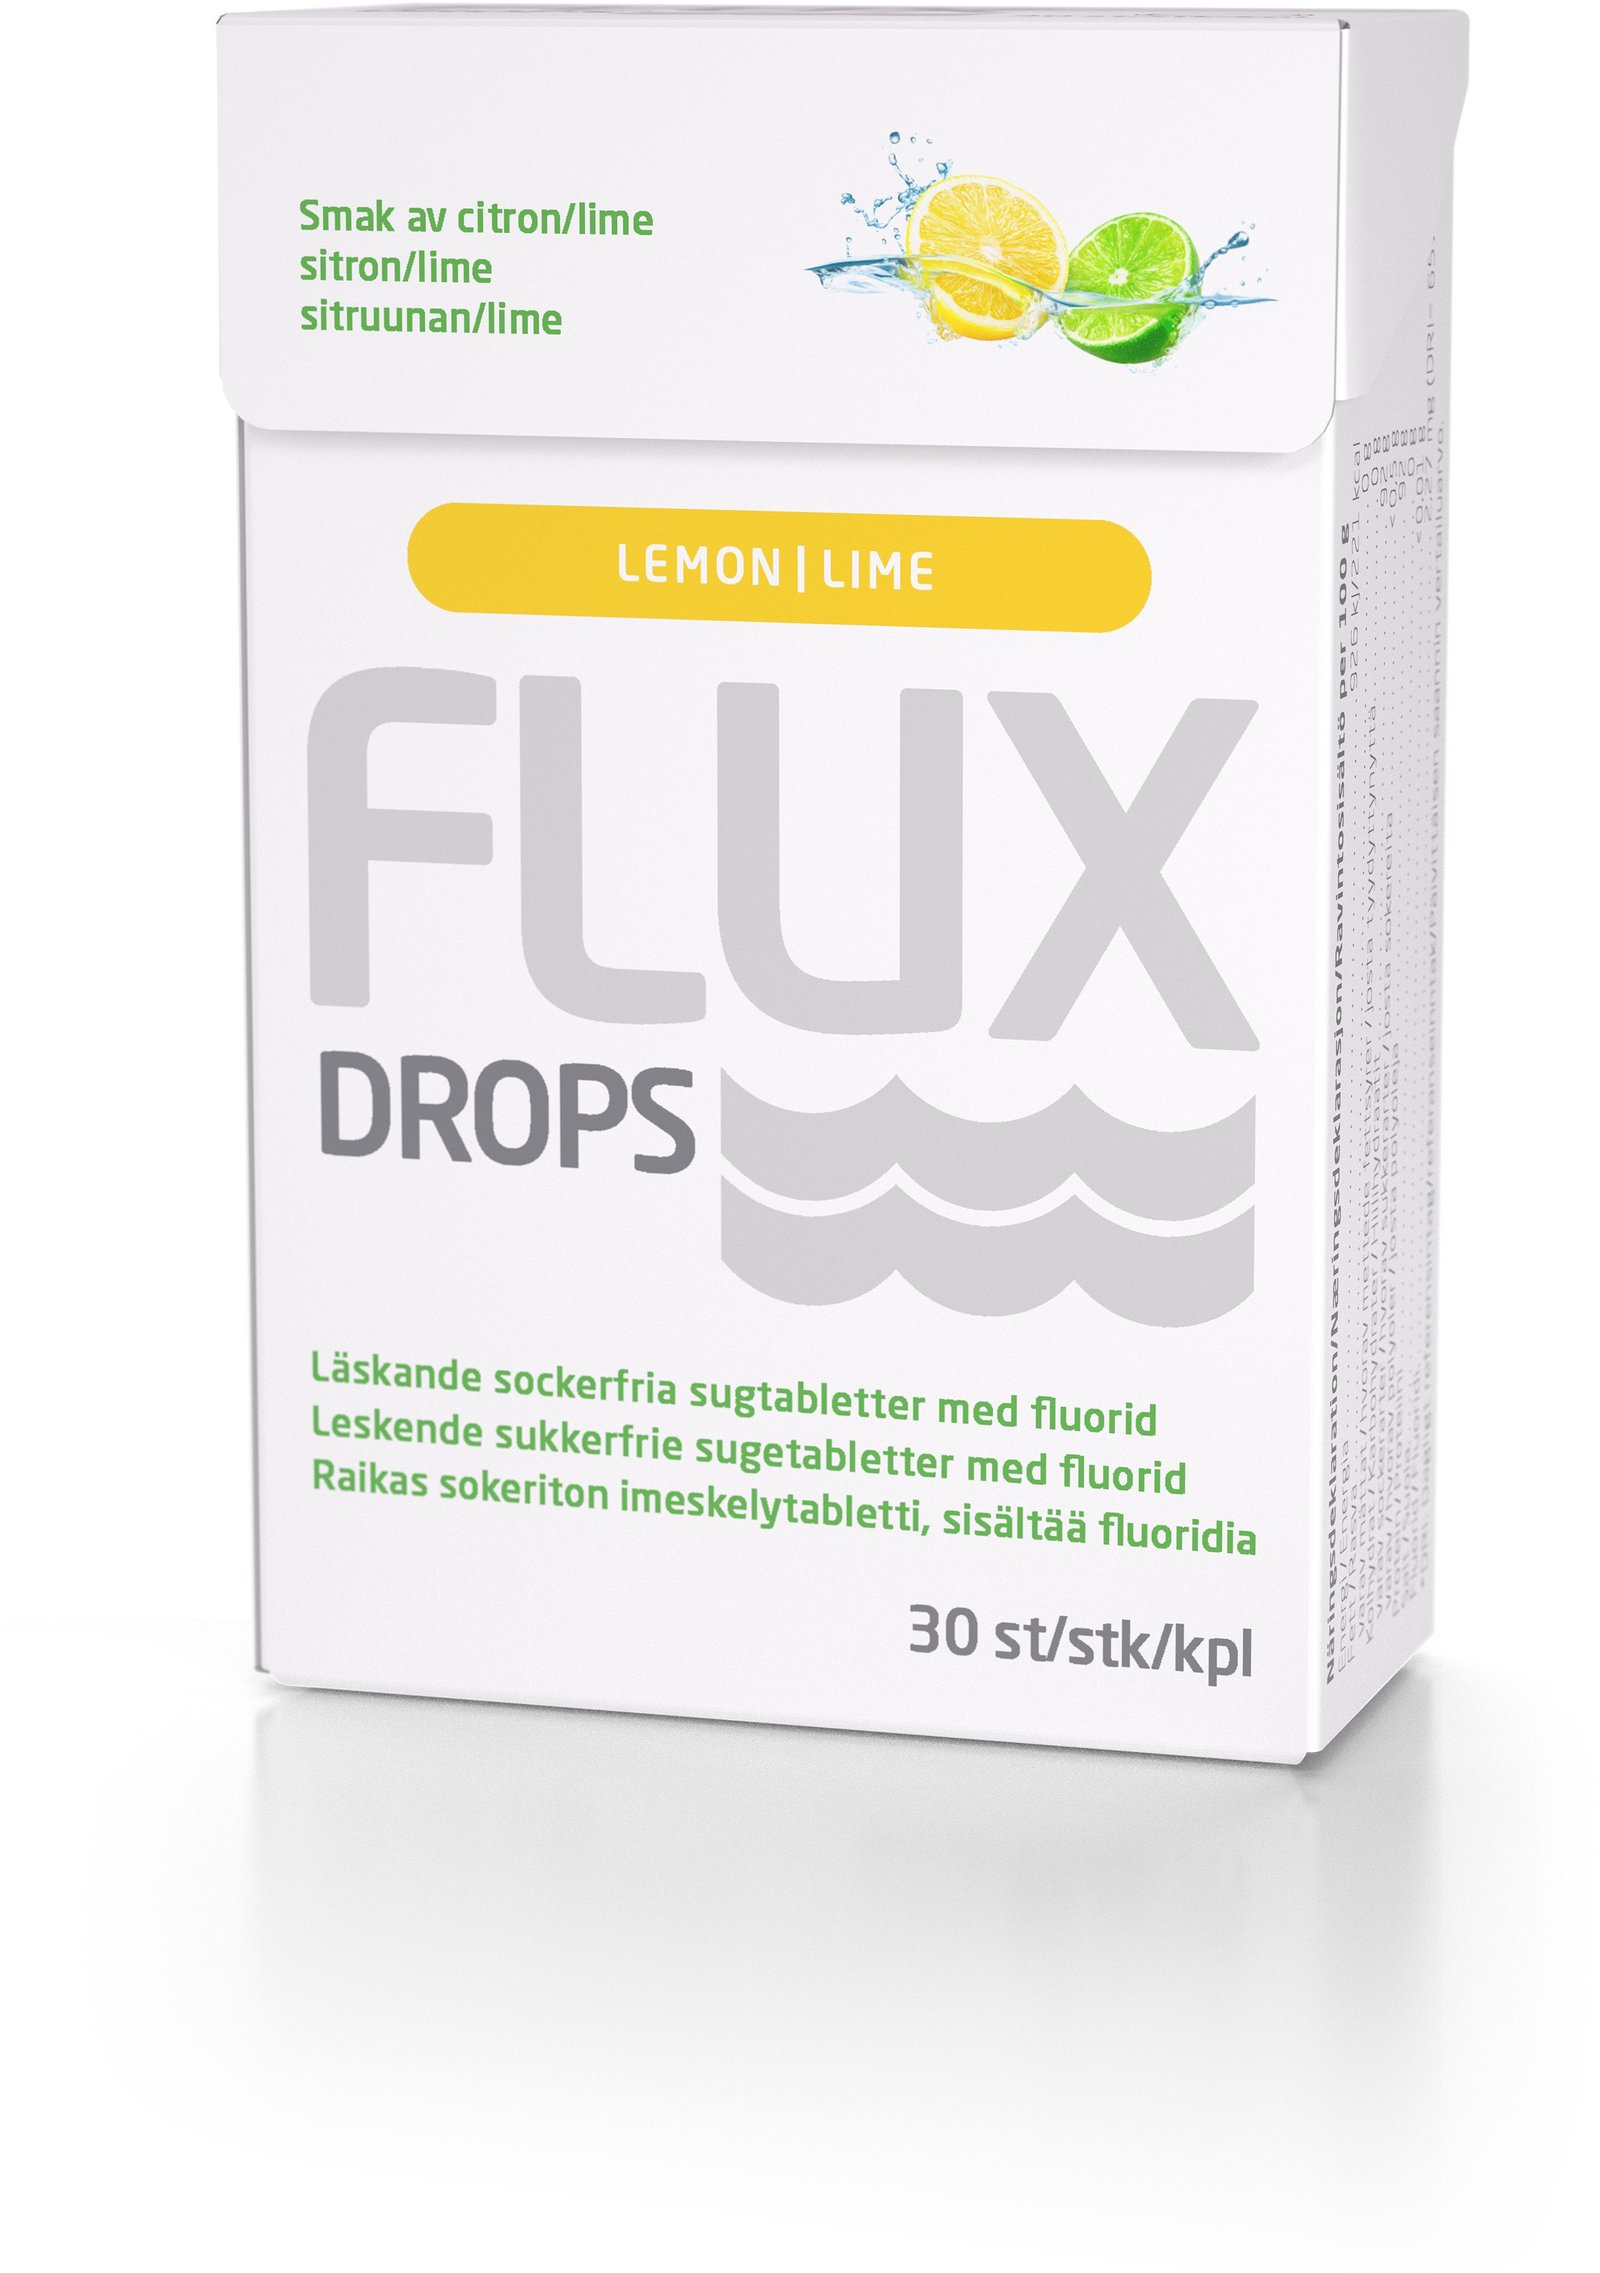 Flux Drops Lemon & Lime 30 st